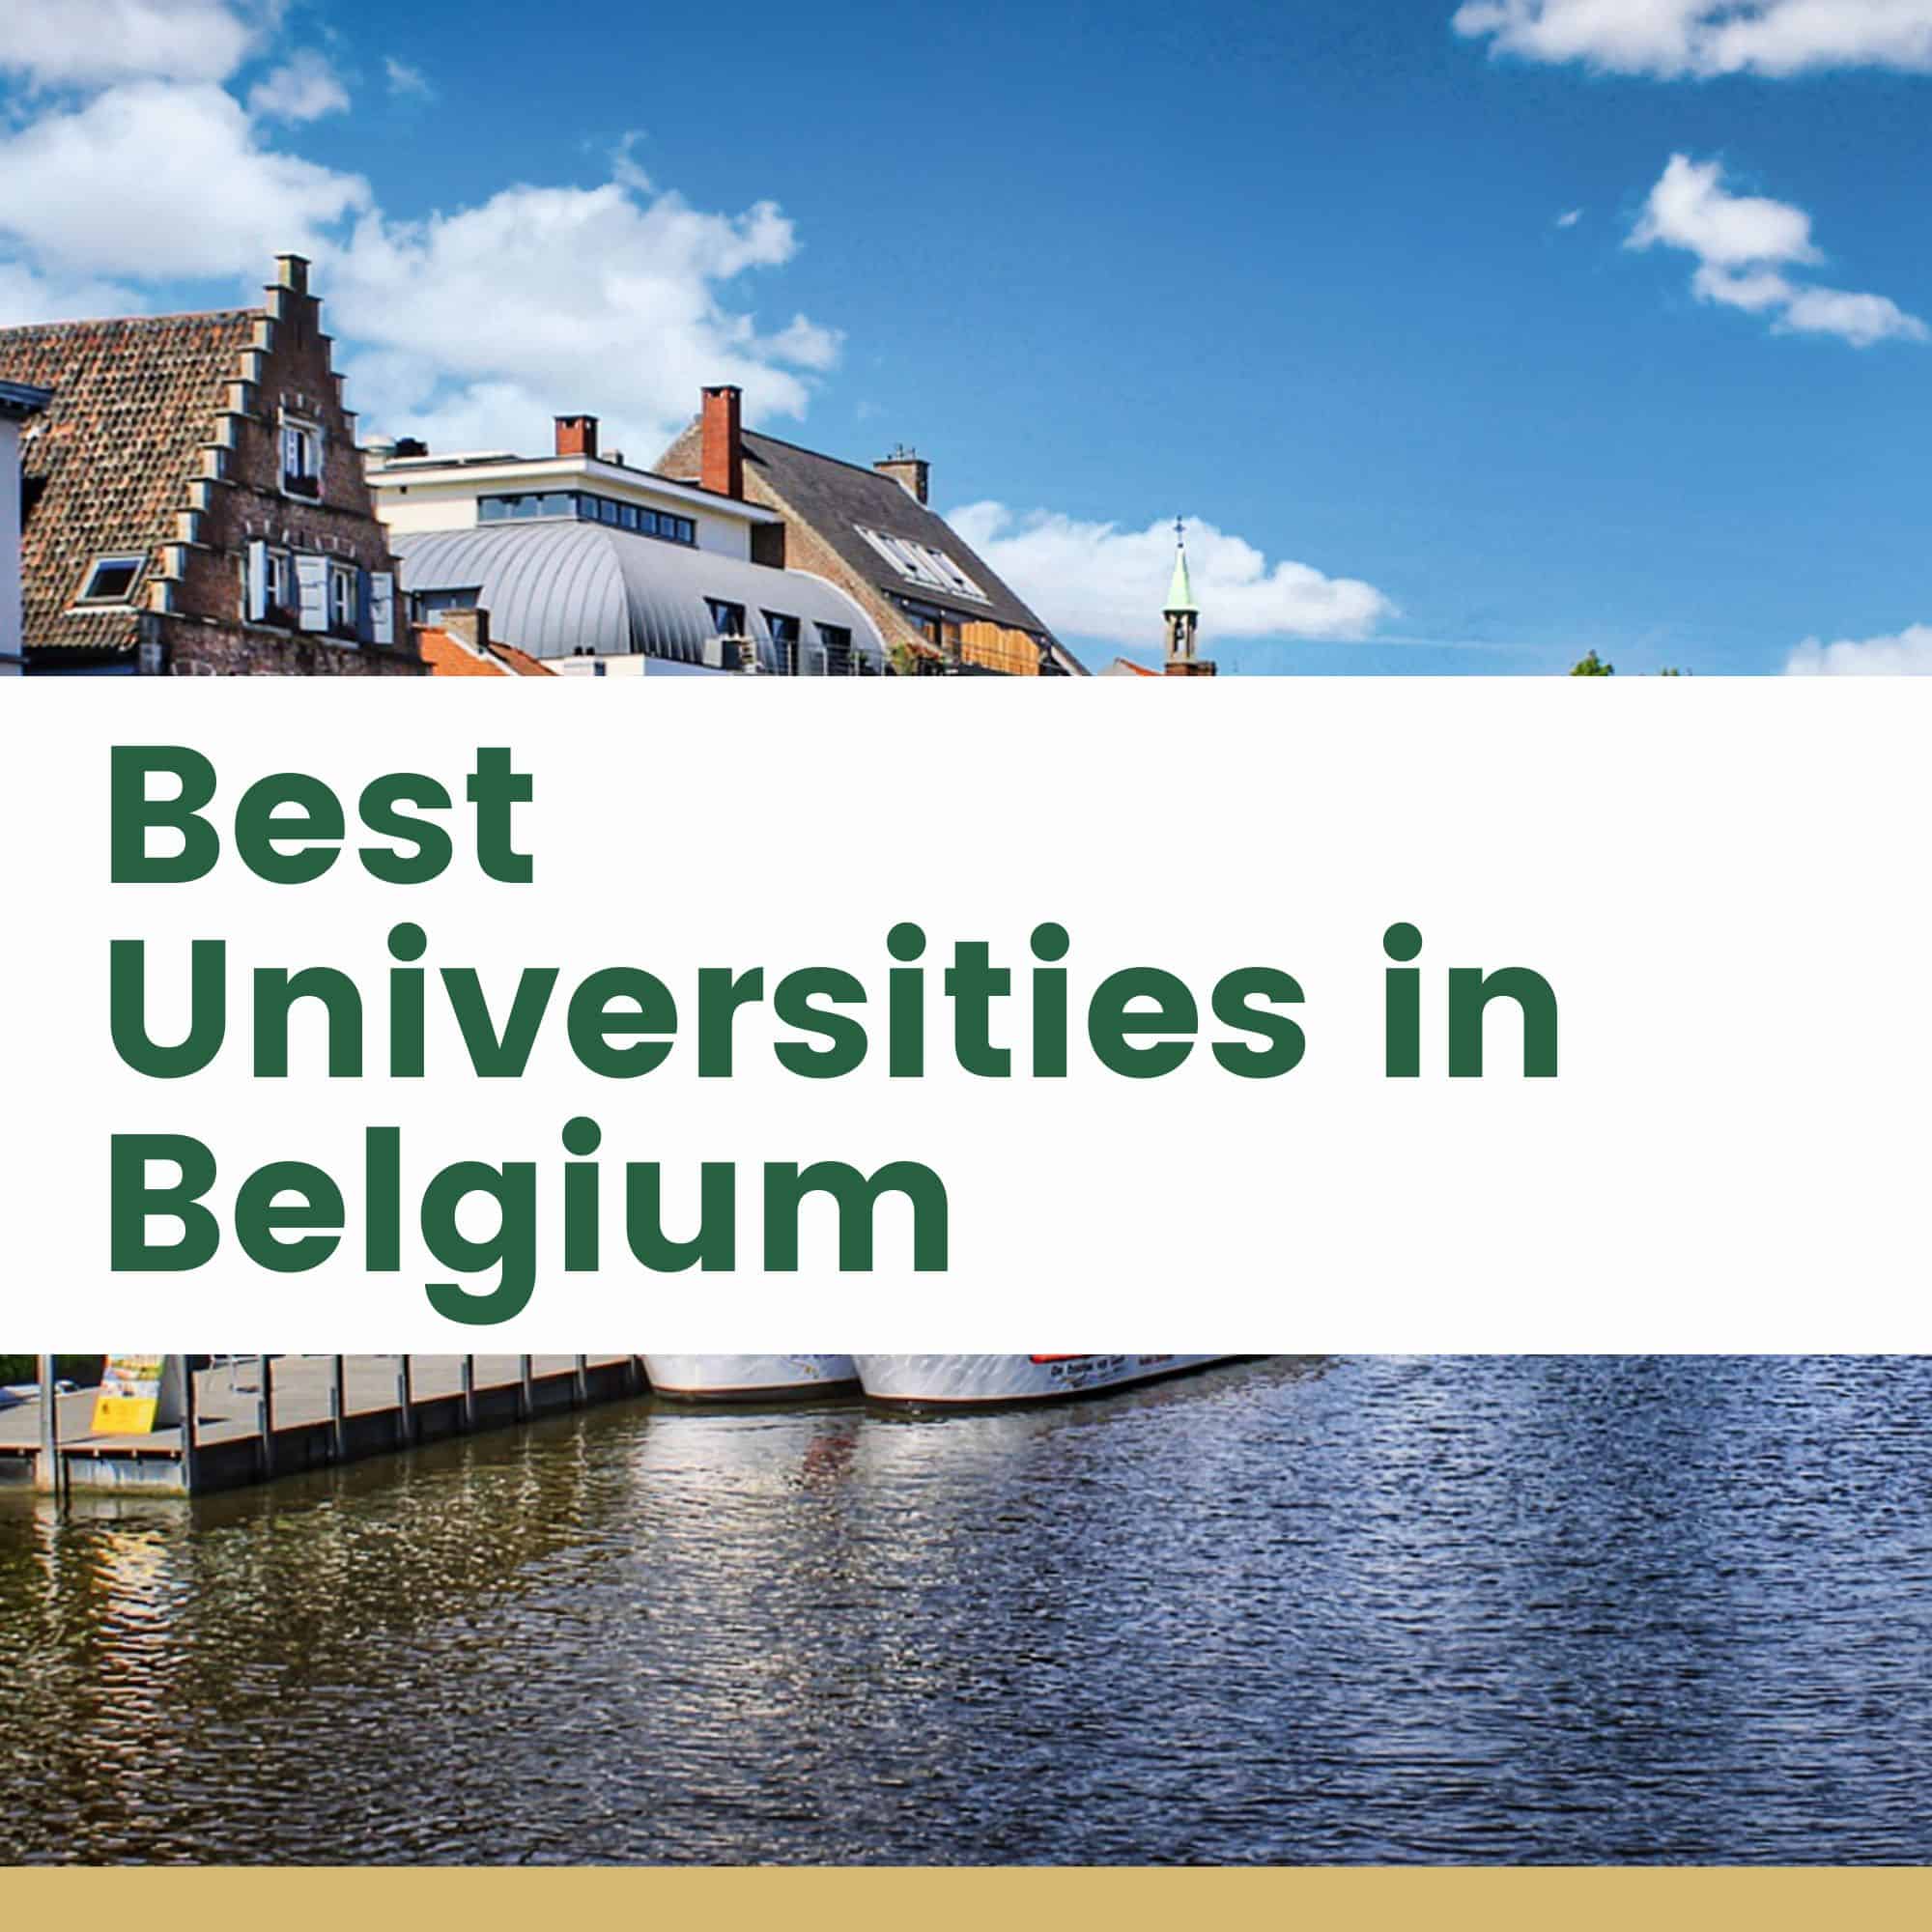 Best Universities in Belgium